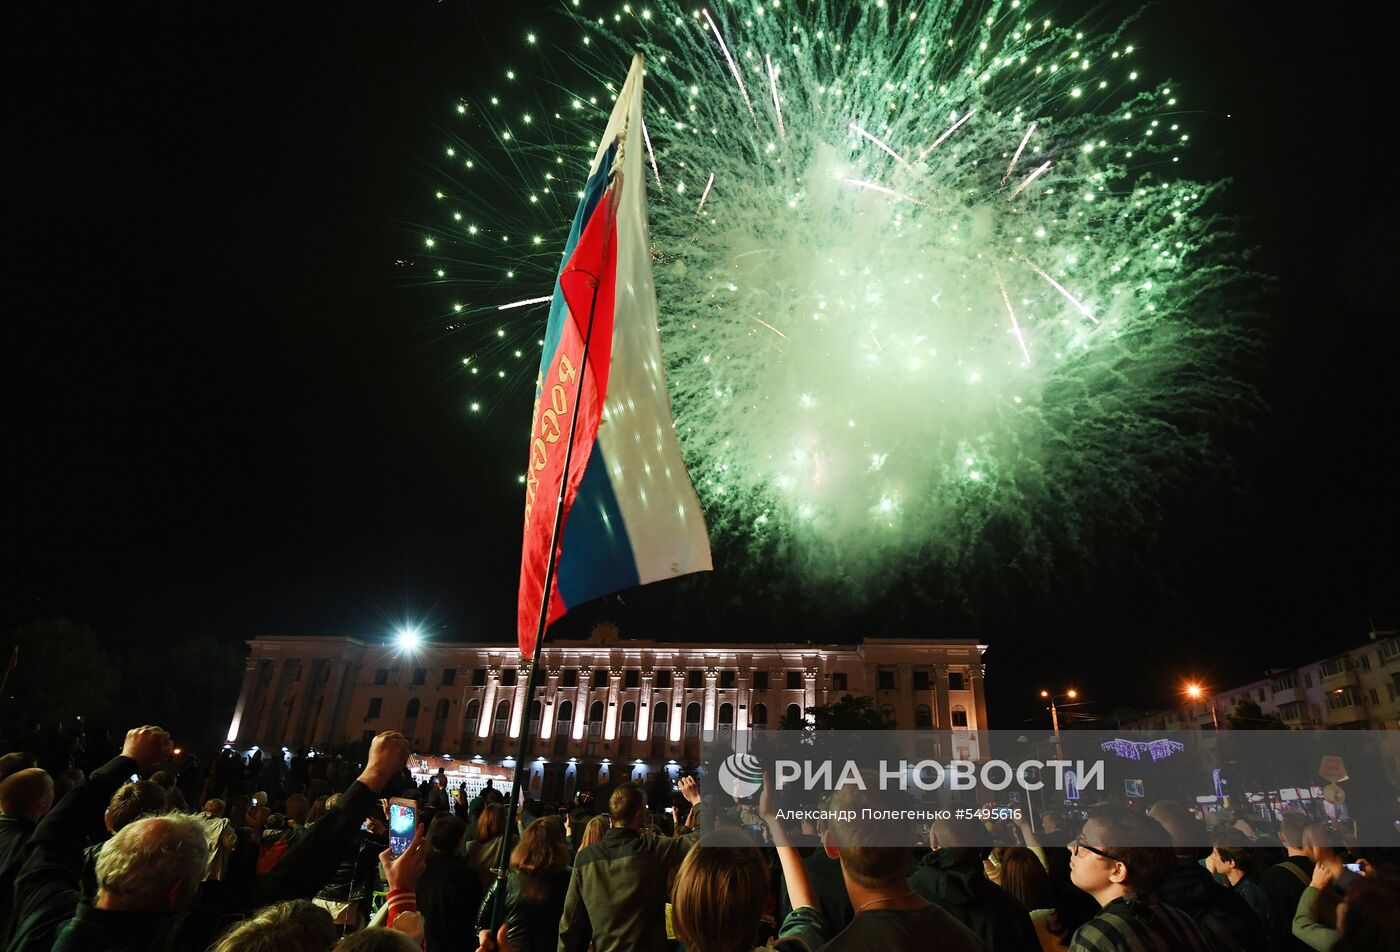 Праздничный салют  в честь Дня Победы в регионах России